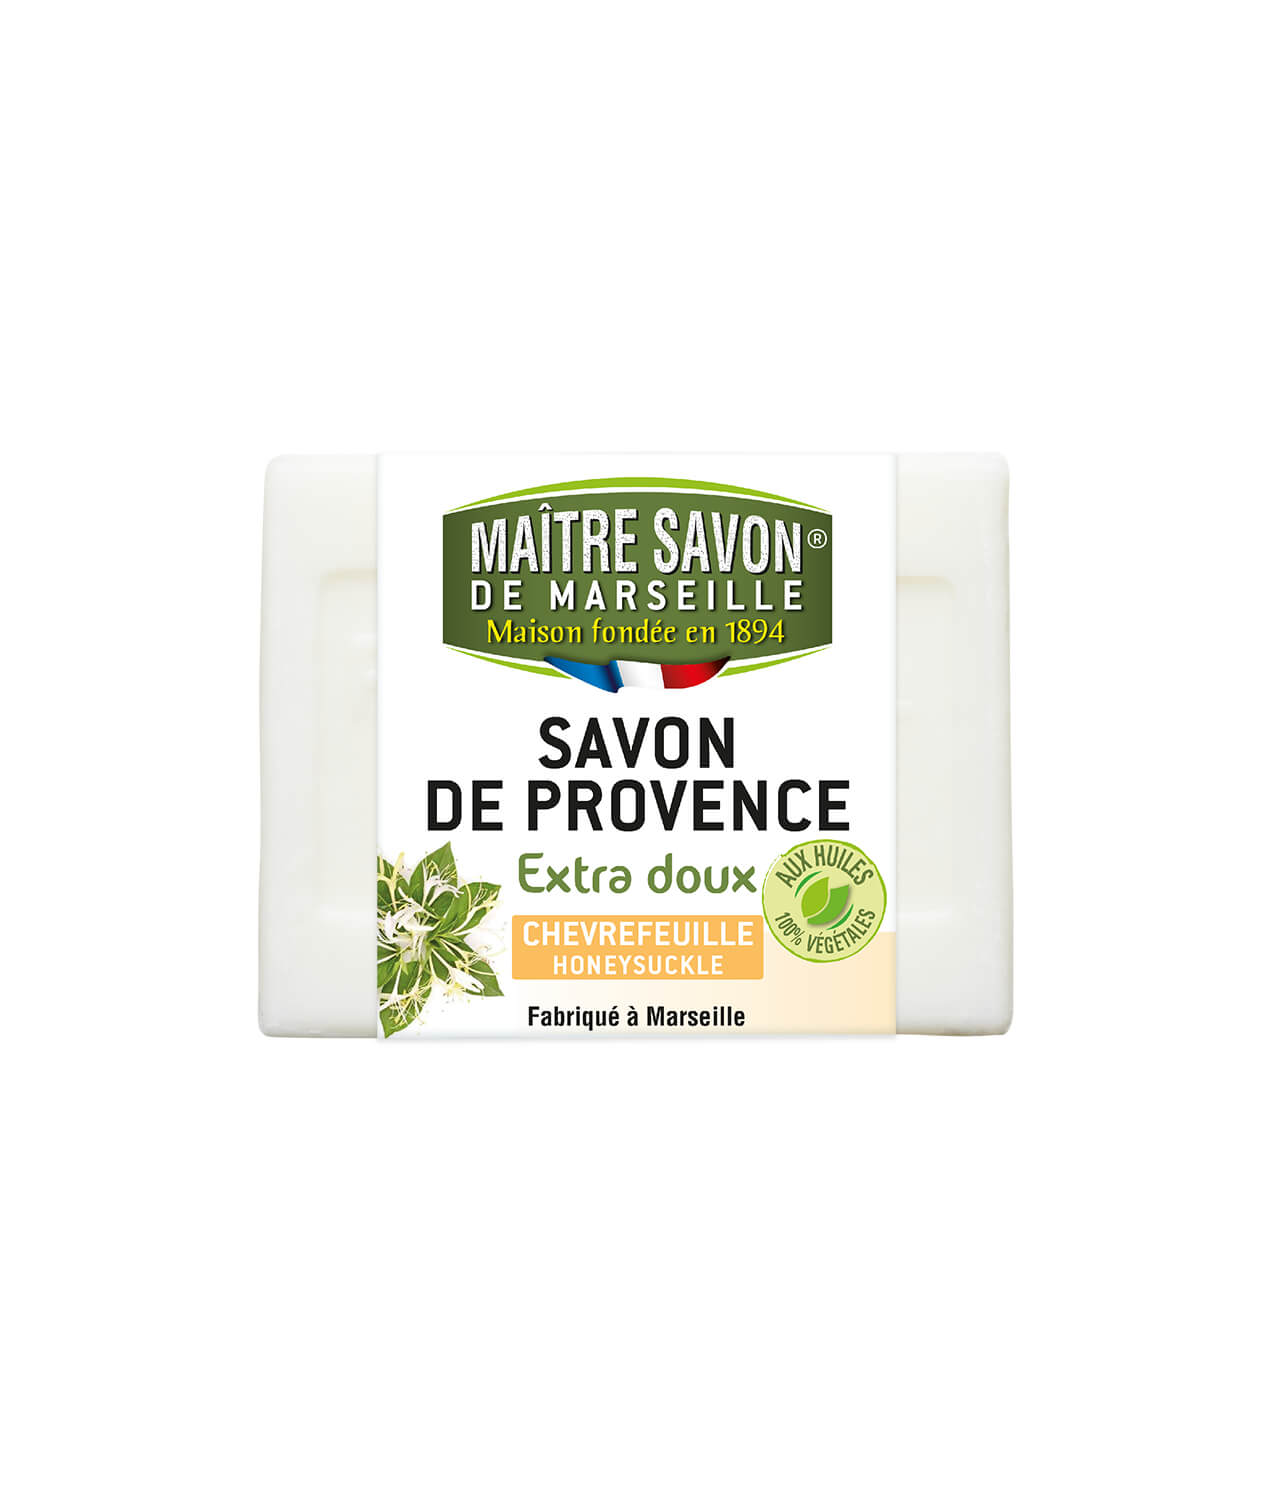 Maitre Savon de Marseille – Savon de Provence Chèvrefeuille – 200g